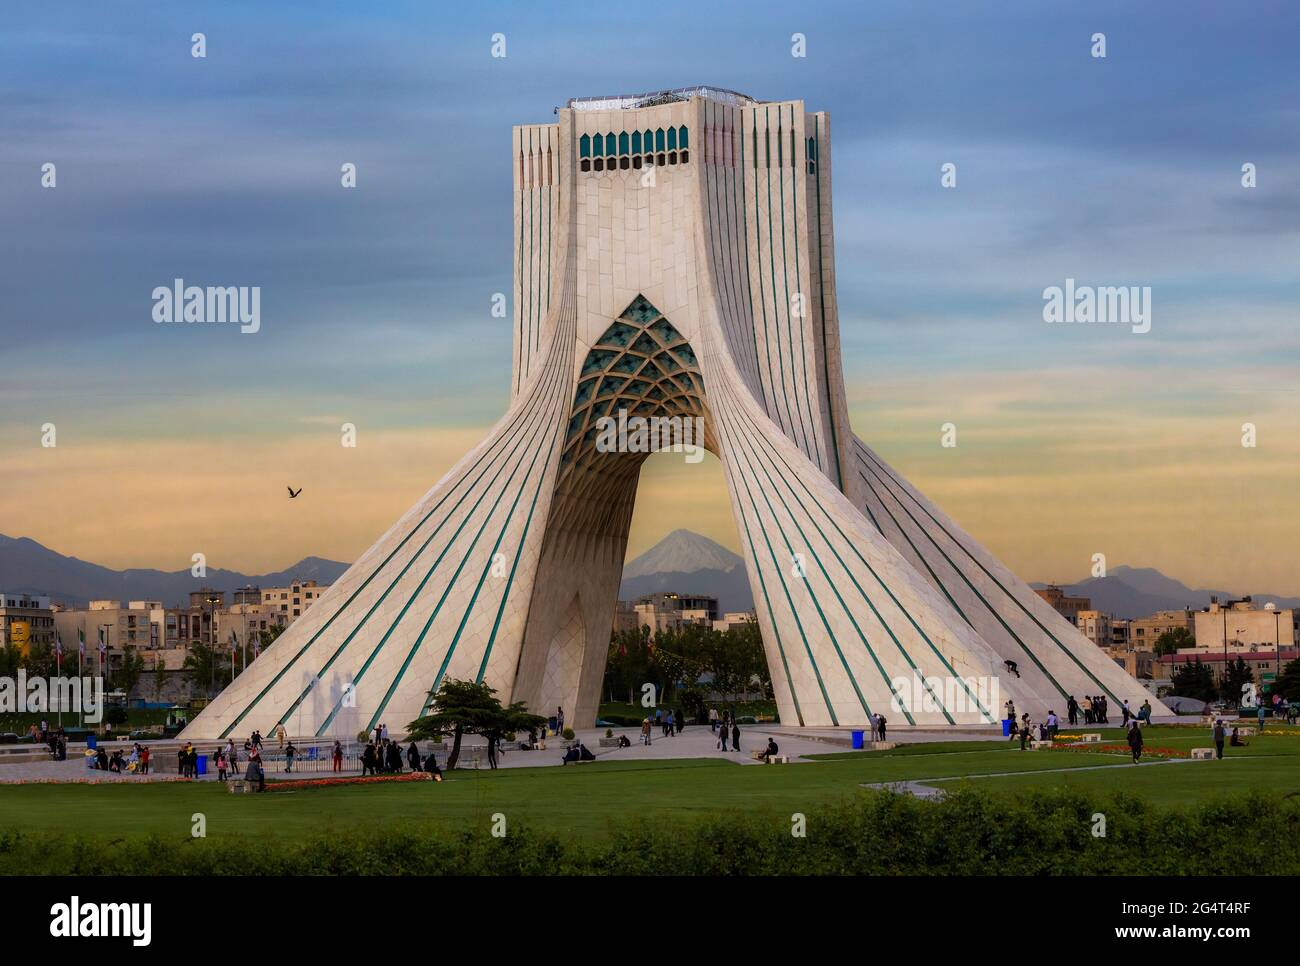 Die azadi Turm ist ein Denkmal am Azadi Platz in Teheran, Iran. Es ist eines der Symbole von Teheran, und markiert den Eingang West in die Stadt. Stockfoto